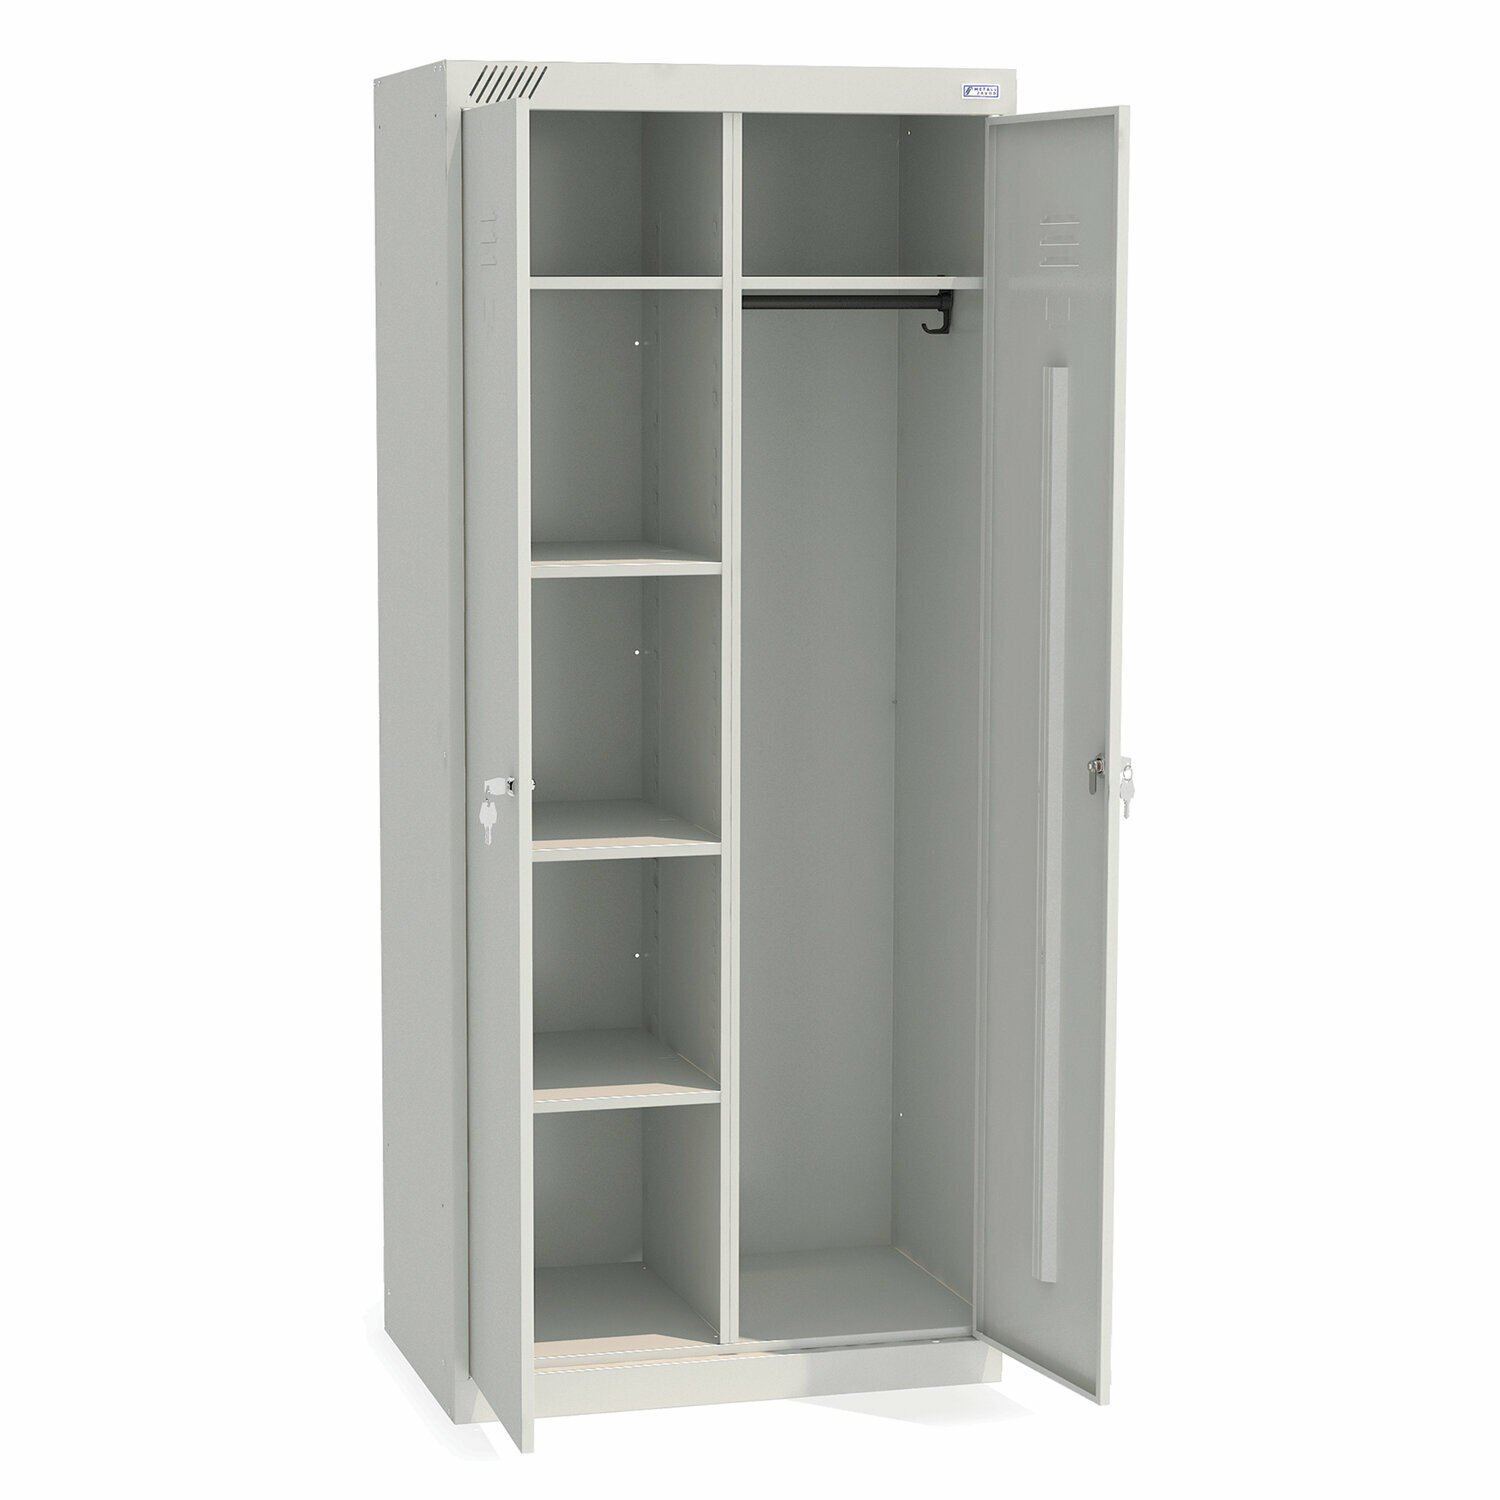 Шкаф металлический хозяйственный ШМ-У 22-800, двухсекционный, 1850×800×500 мм, 38 кг, разборный /Квант продажи 1 ед./